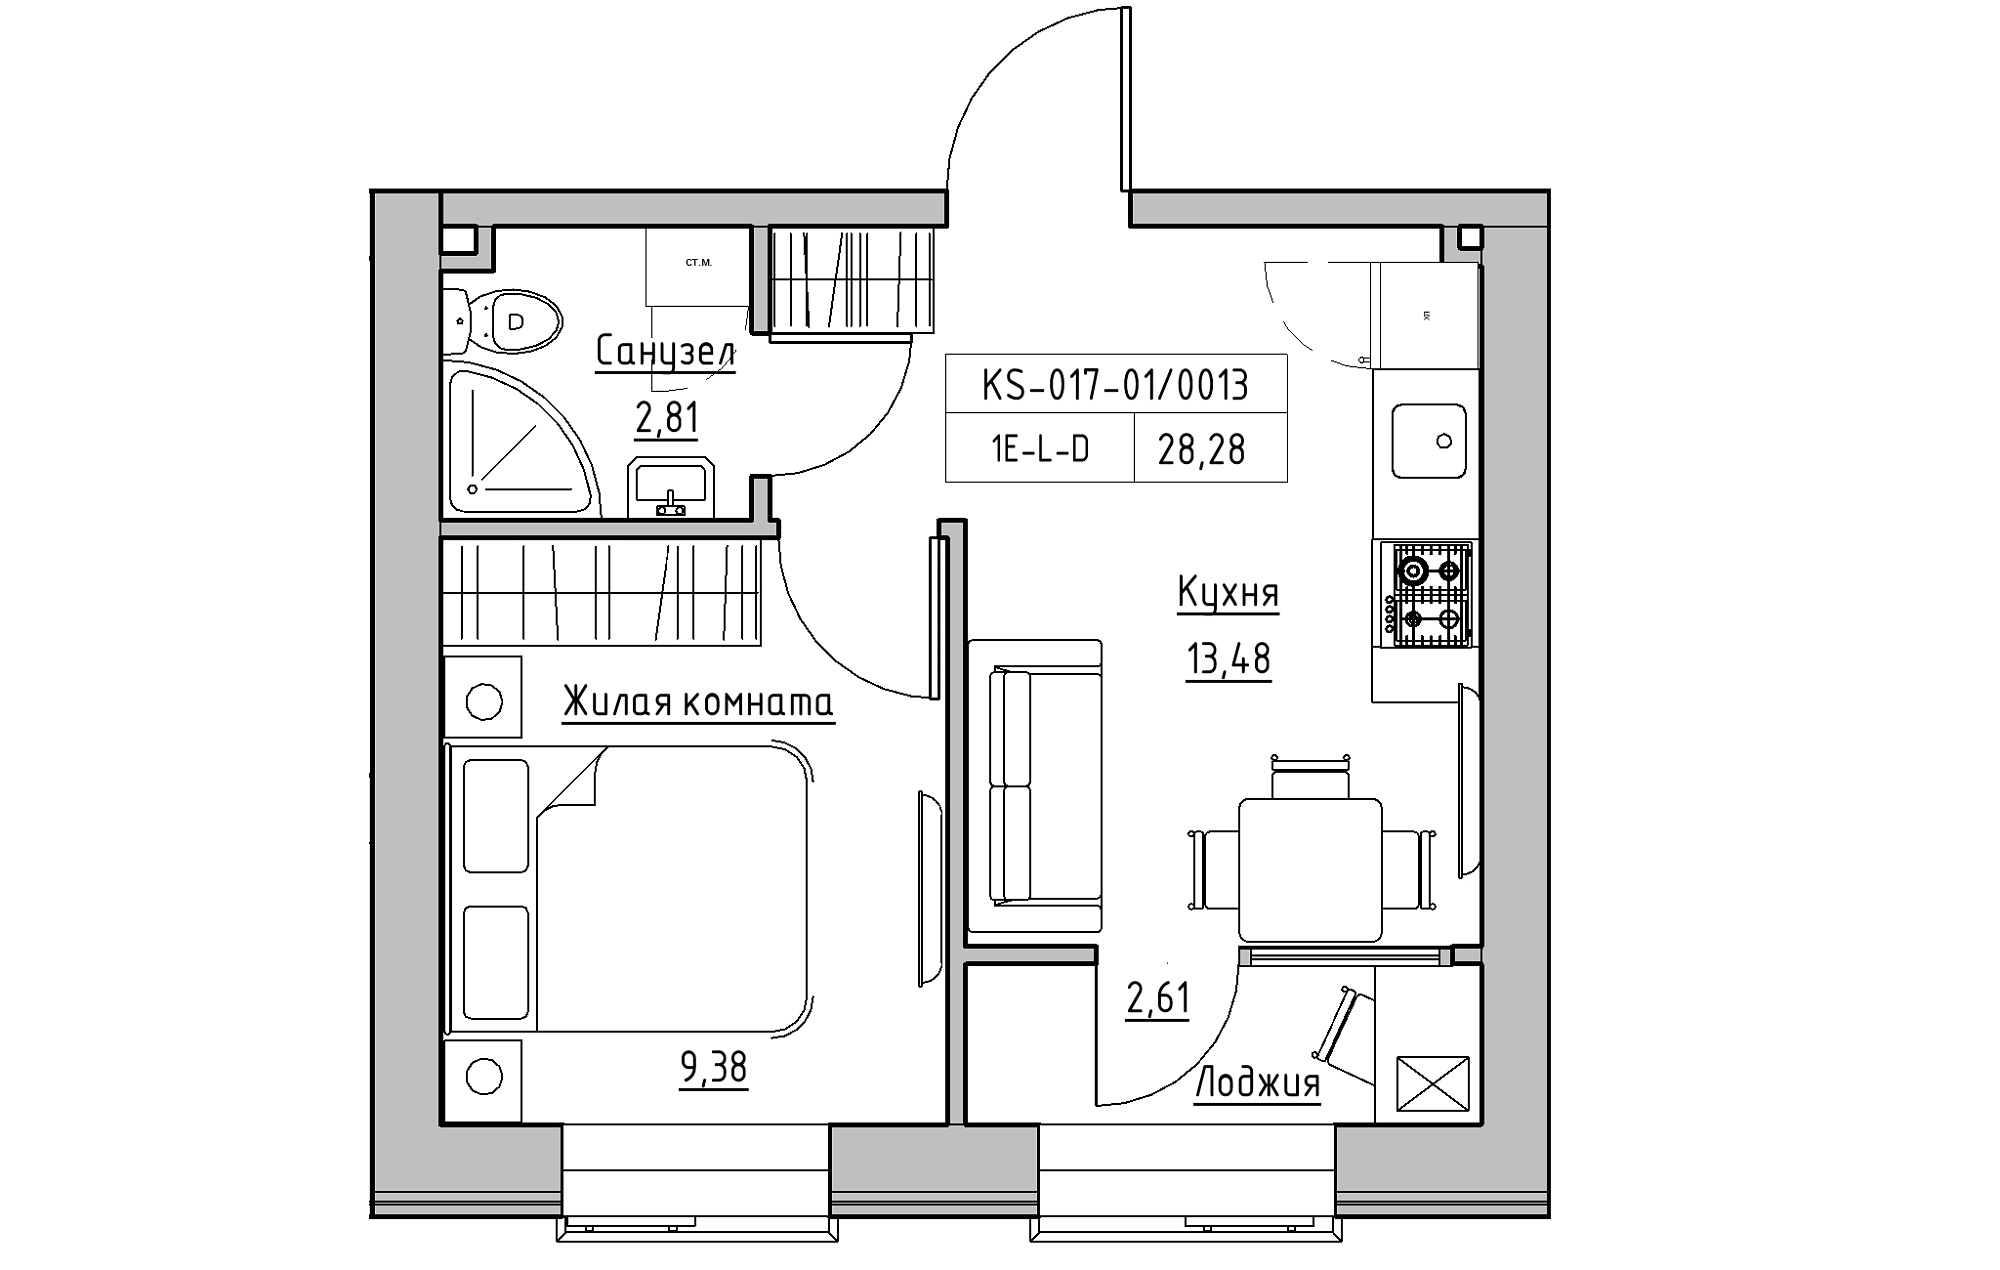 Планування 1-к квартира площею 28.28м2, KS-017-01/0013.